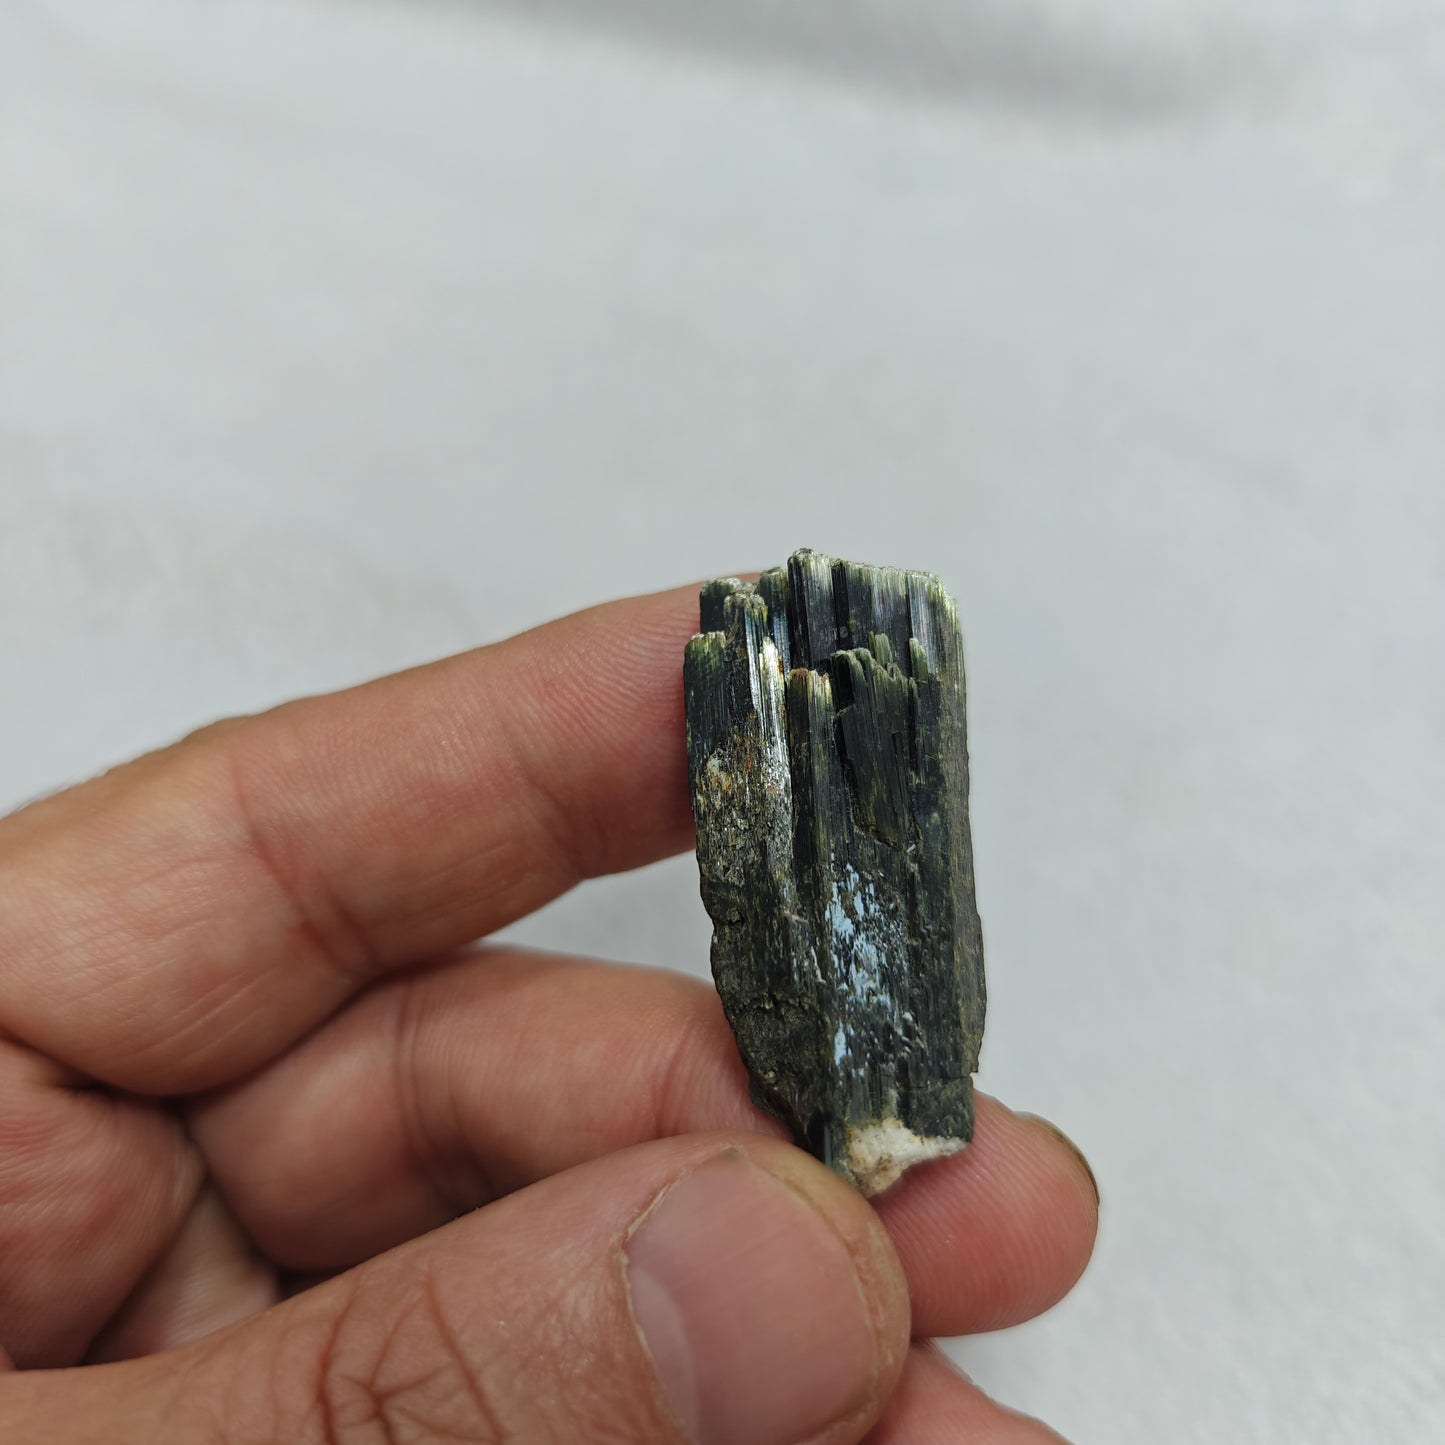 Natural aegirine crystal 13 grams